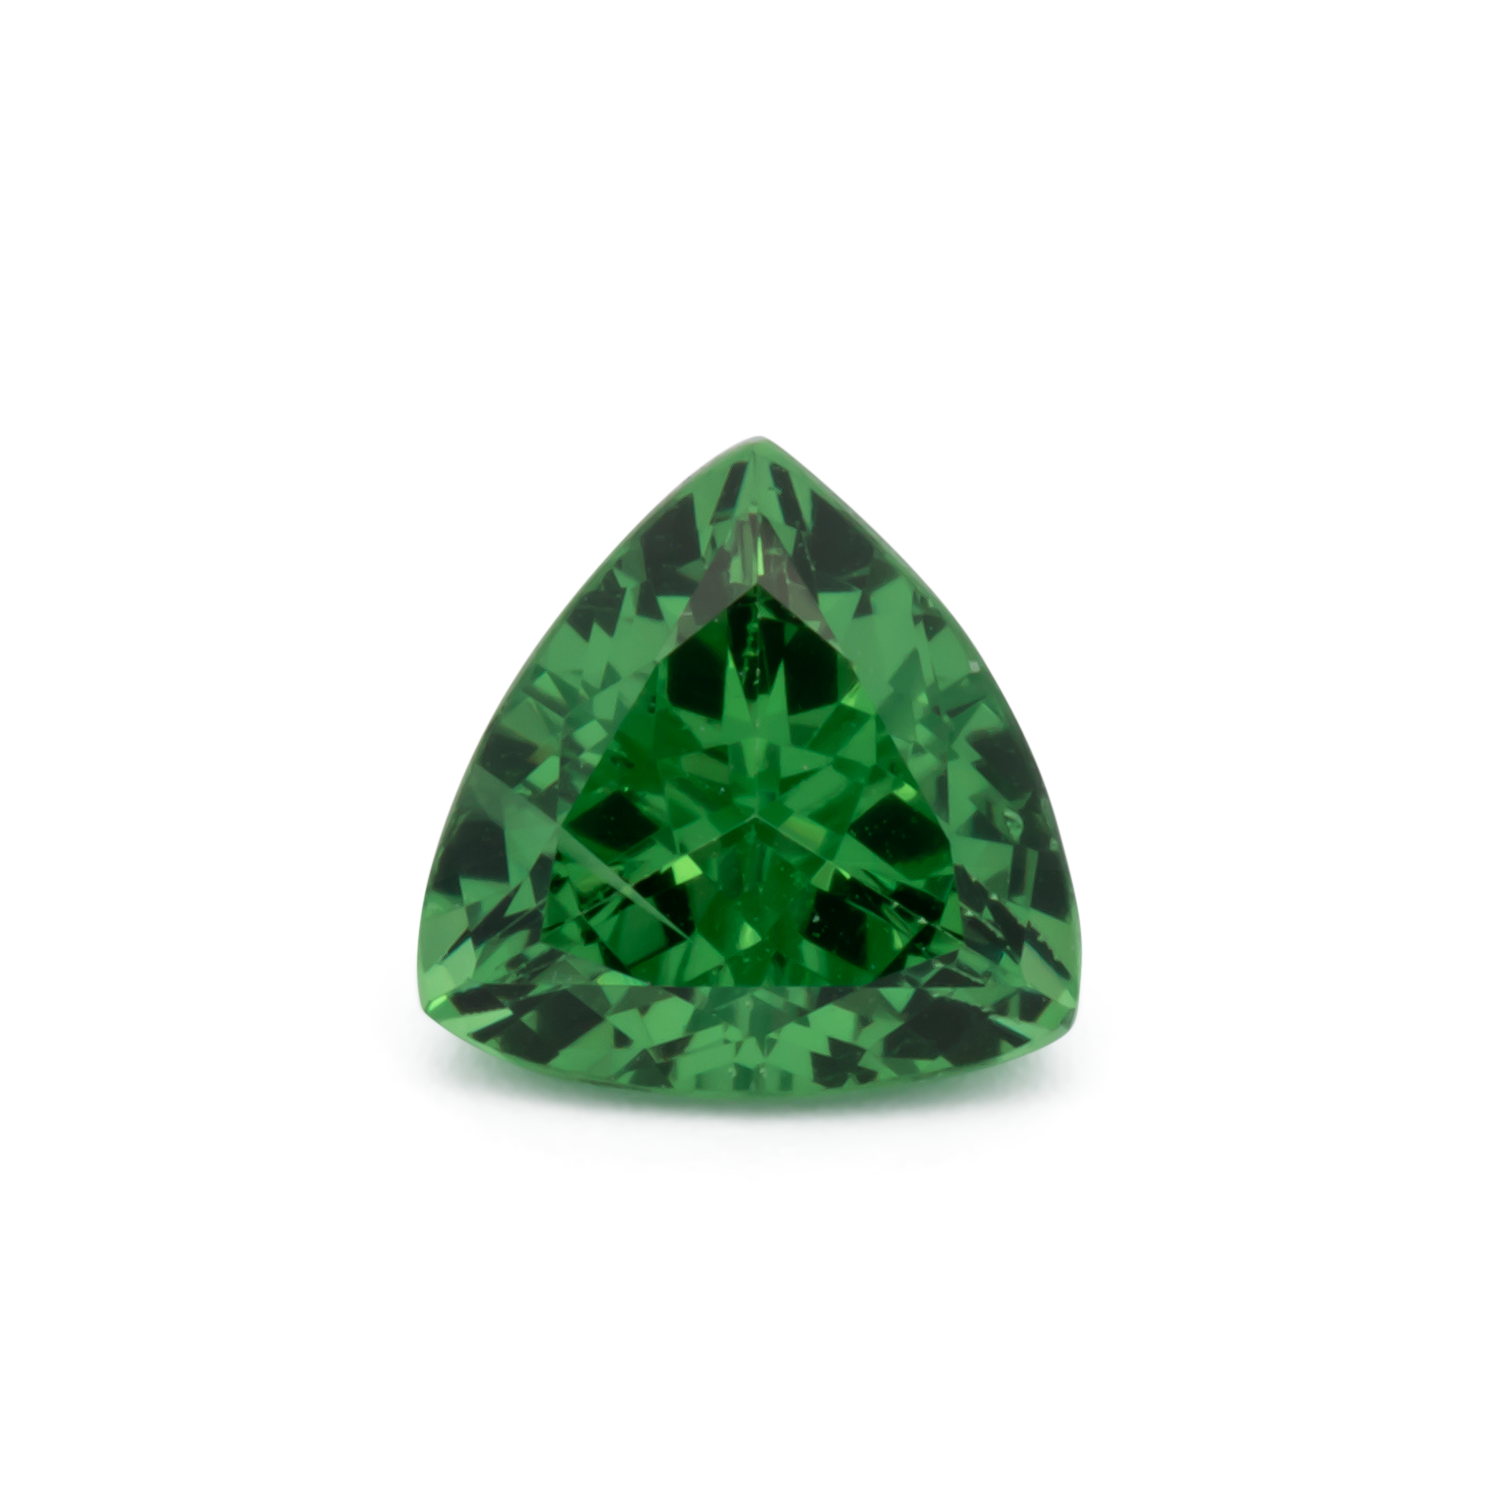 Tsavorit - grün, trillion, 6x6 mm, 0.93 cts, Nr. TS91017